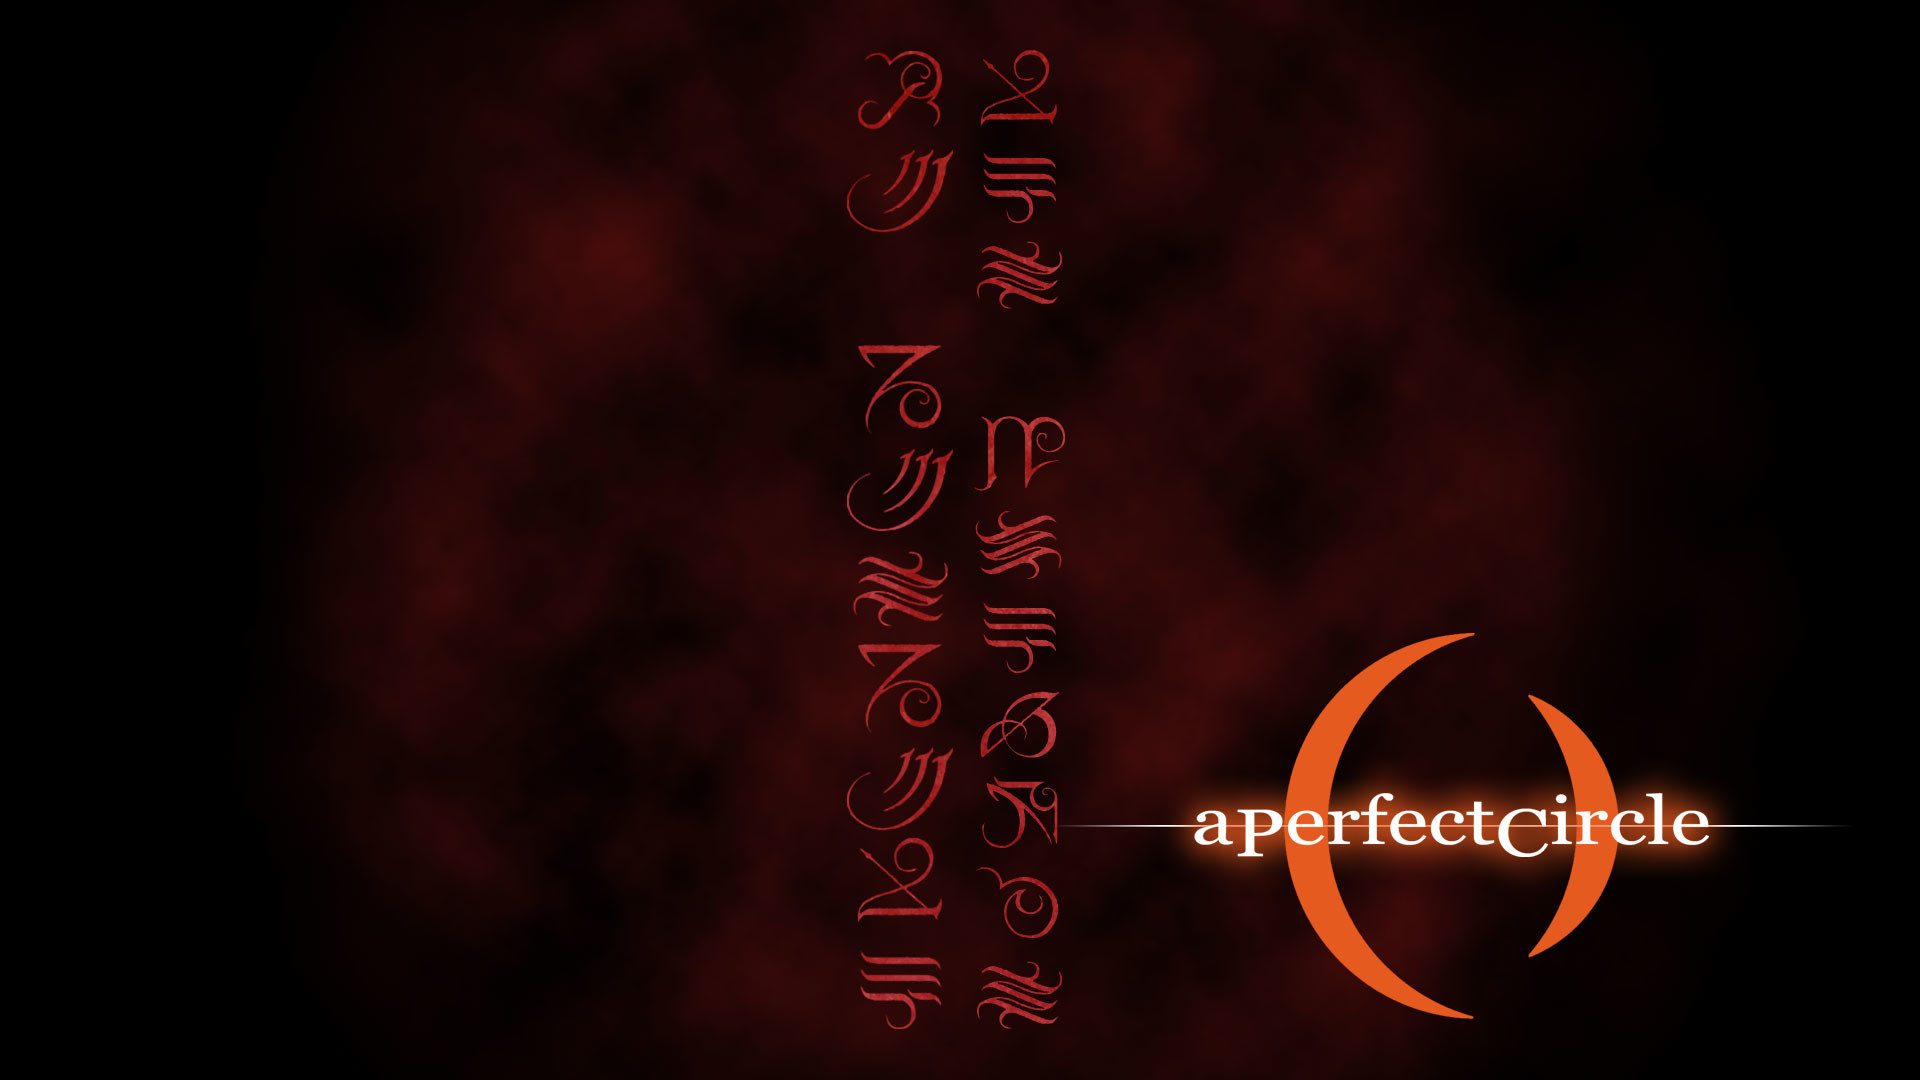 un fondo de pantalla de círculo perfecto,texto,fuente,rojo,caligrafía,oscuridad